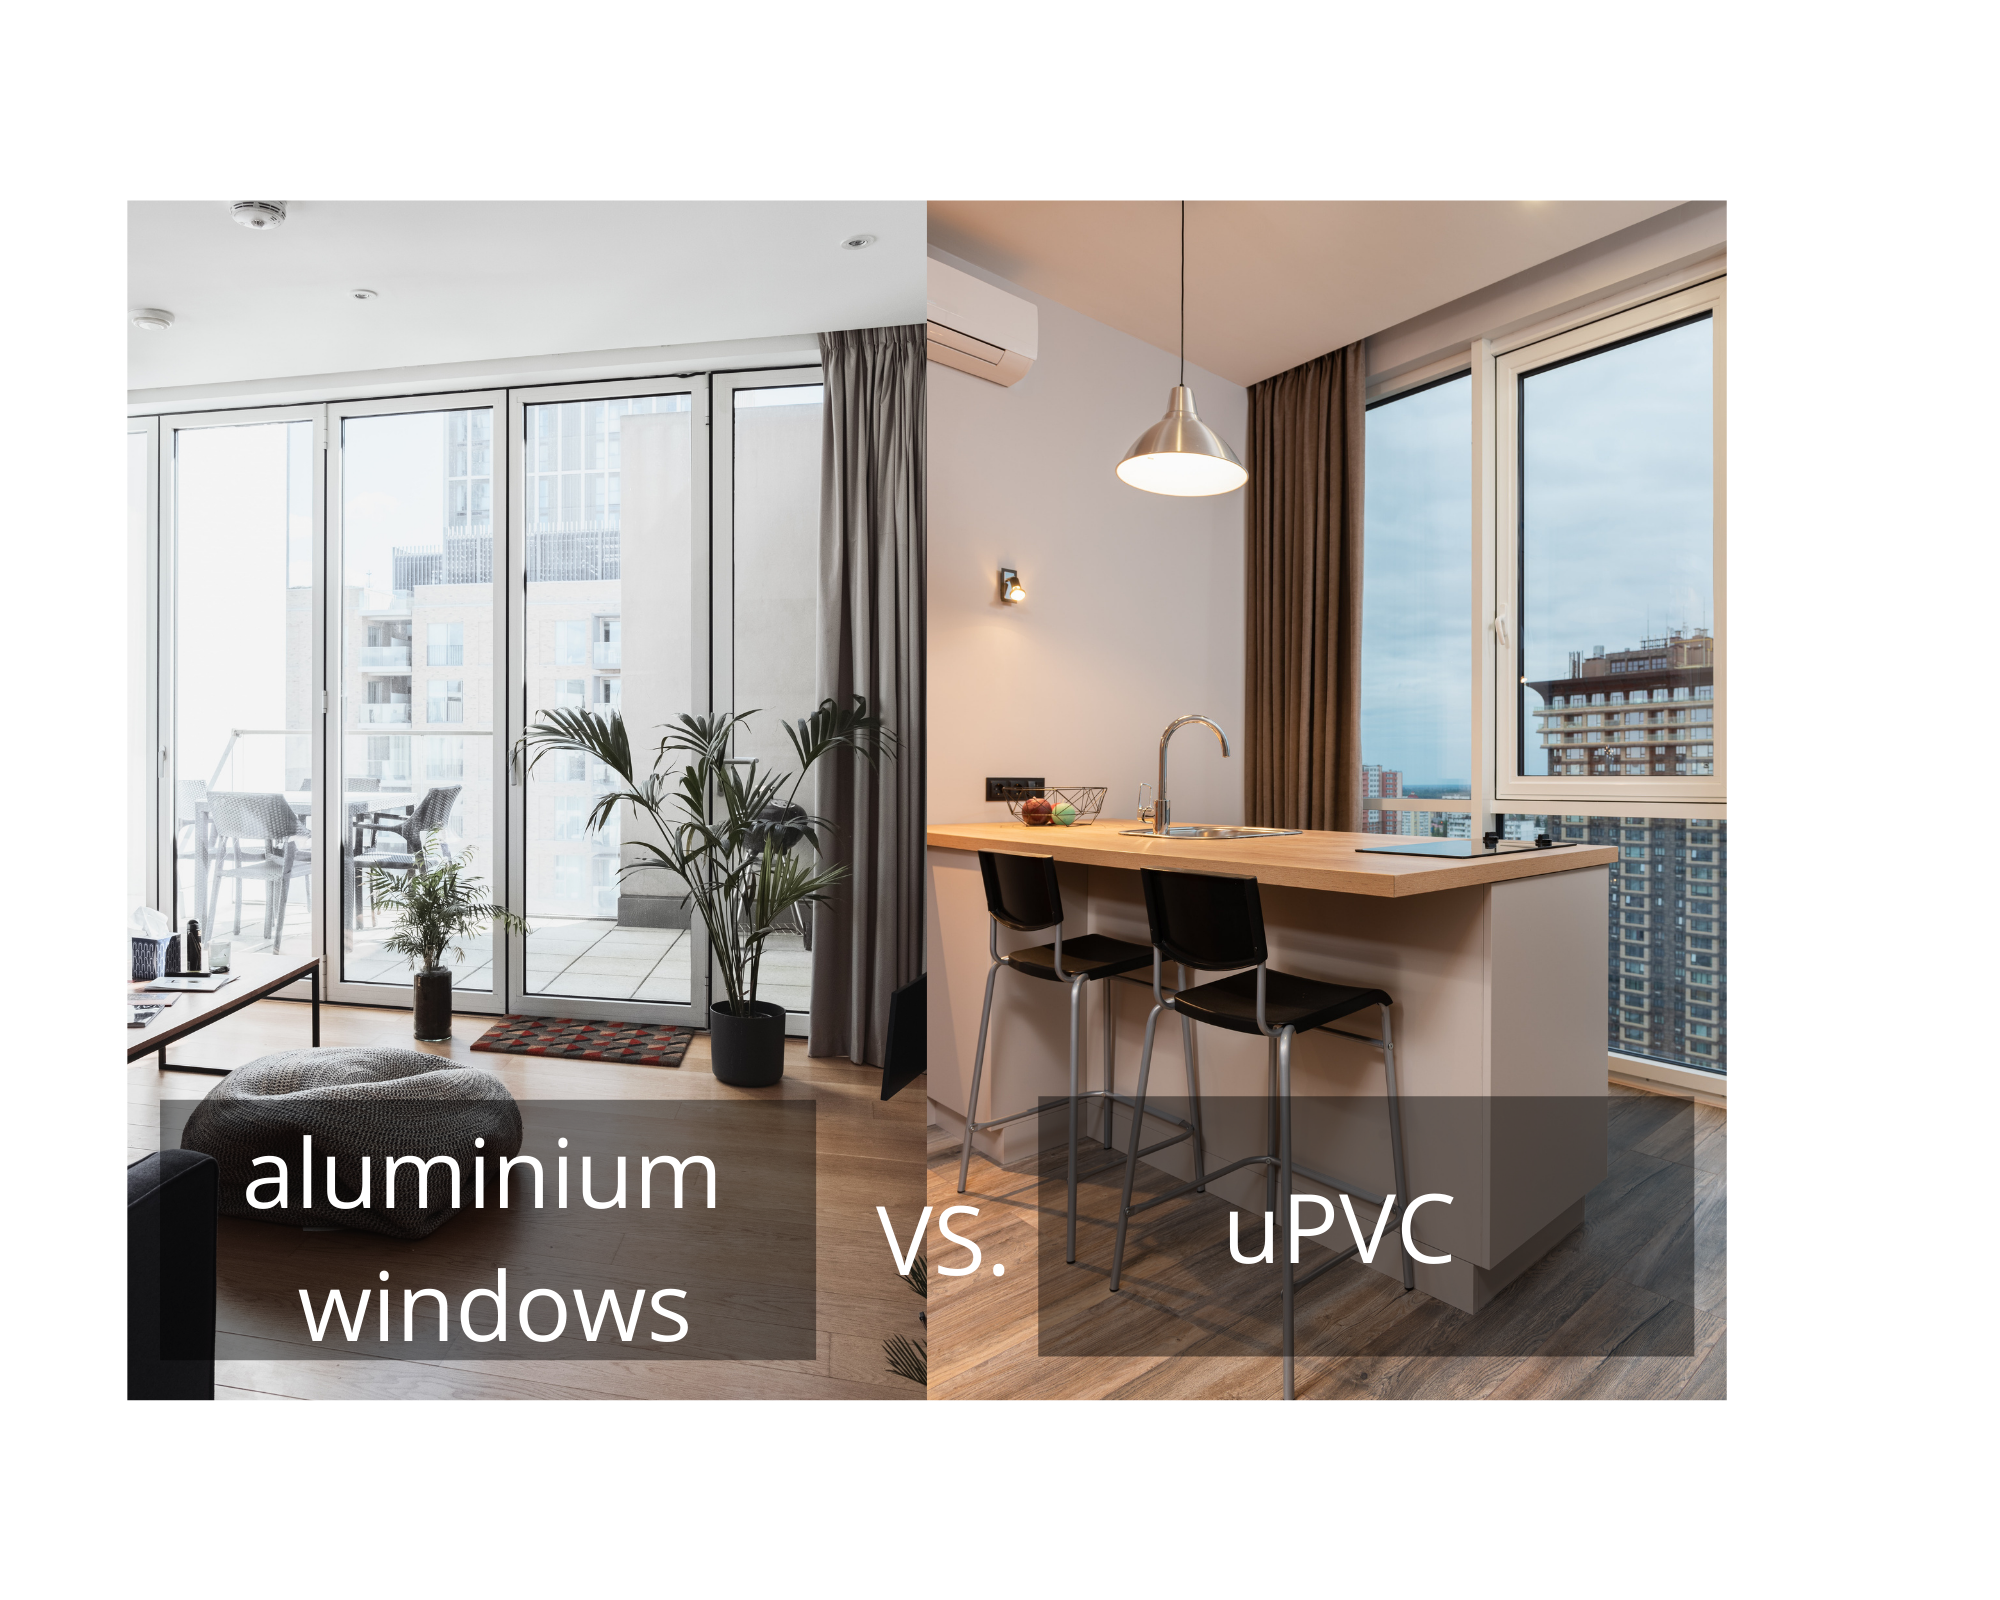 aluminium windows vs. uPCV